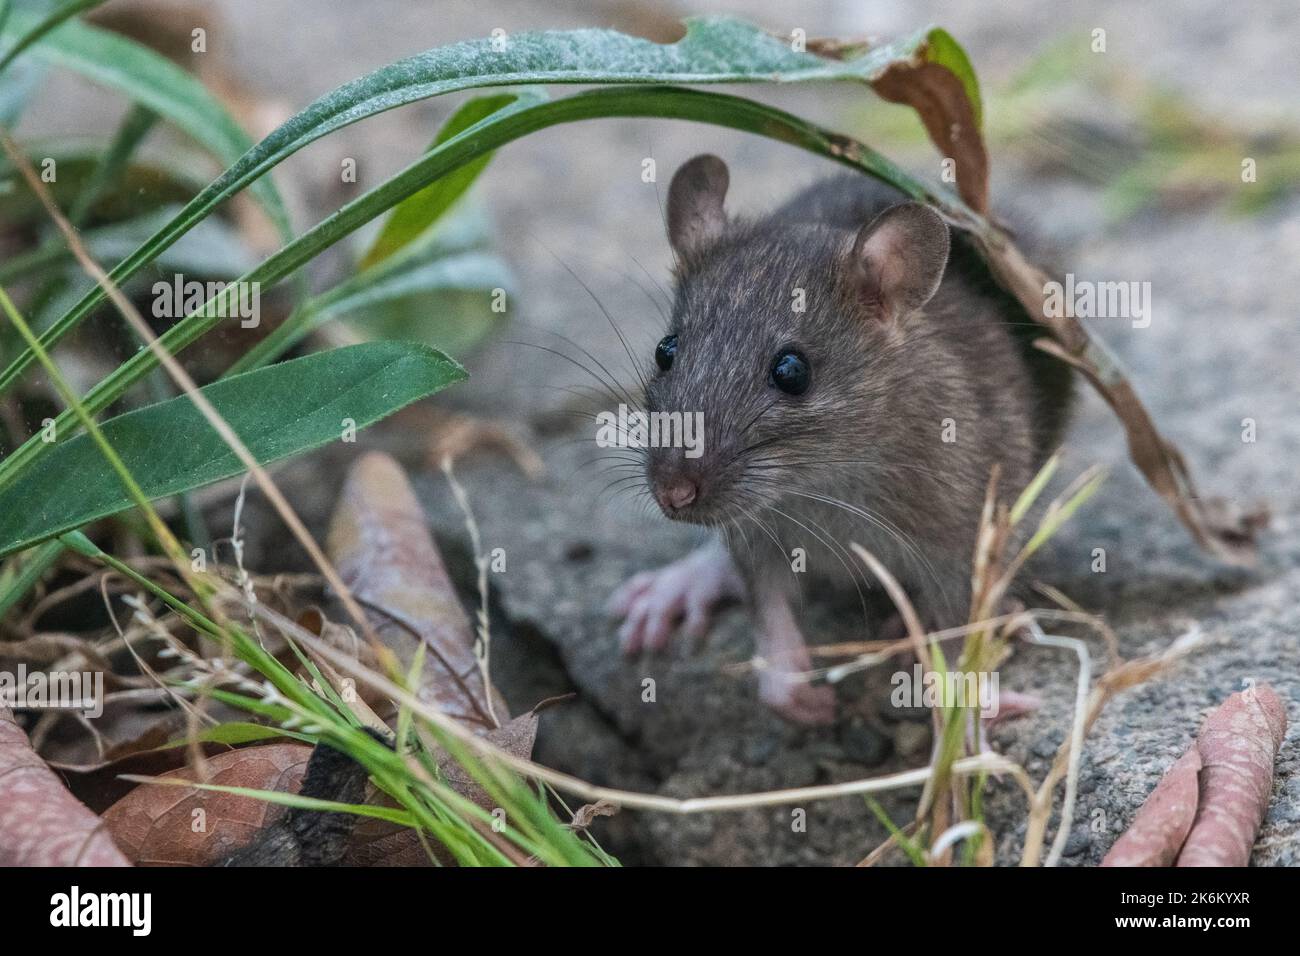 A common brown rat (Rattus norvegicus) in an urban garden in the San Francisco Bay area of California. Stock Photo